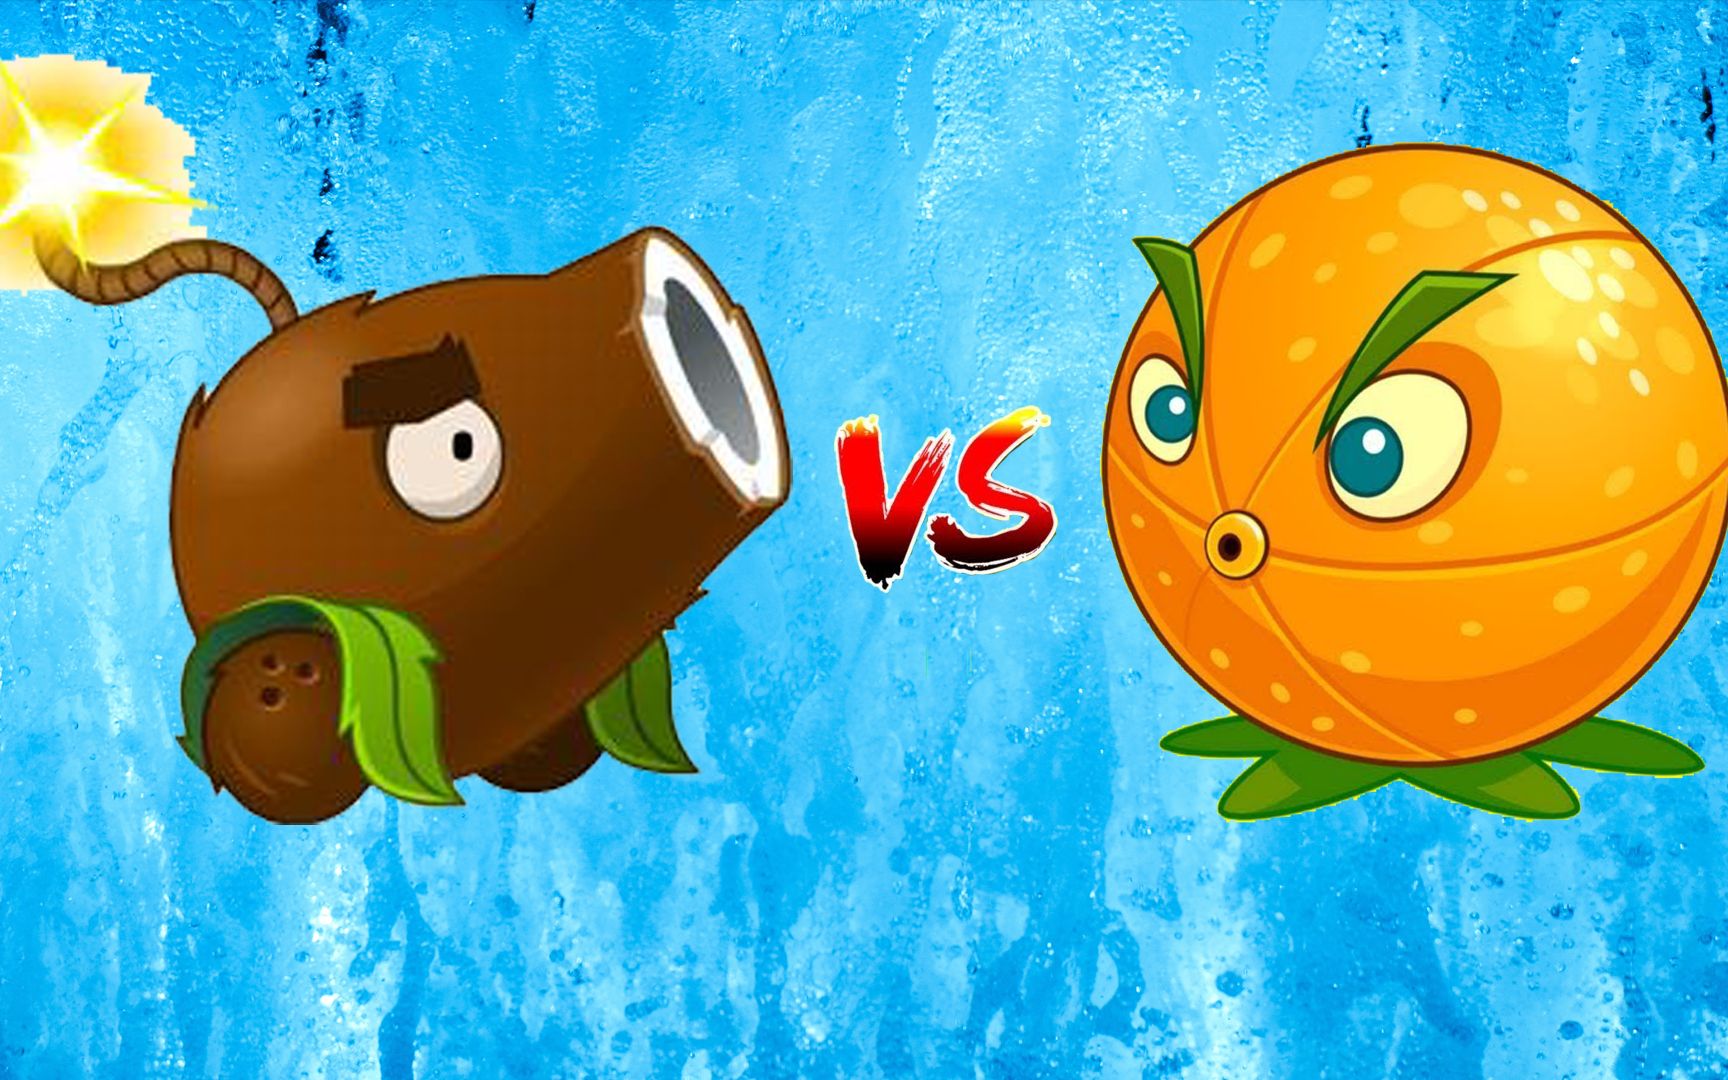 植物大战僵尸2:椰子加农炮vs充能柚子,充能柚子:无敌是多么的寂寞